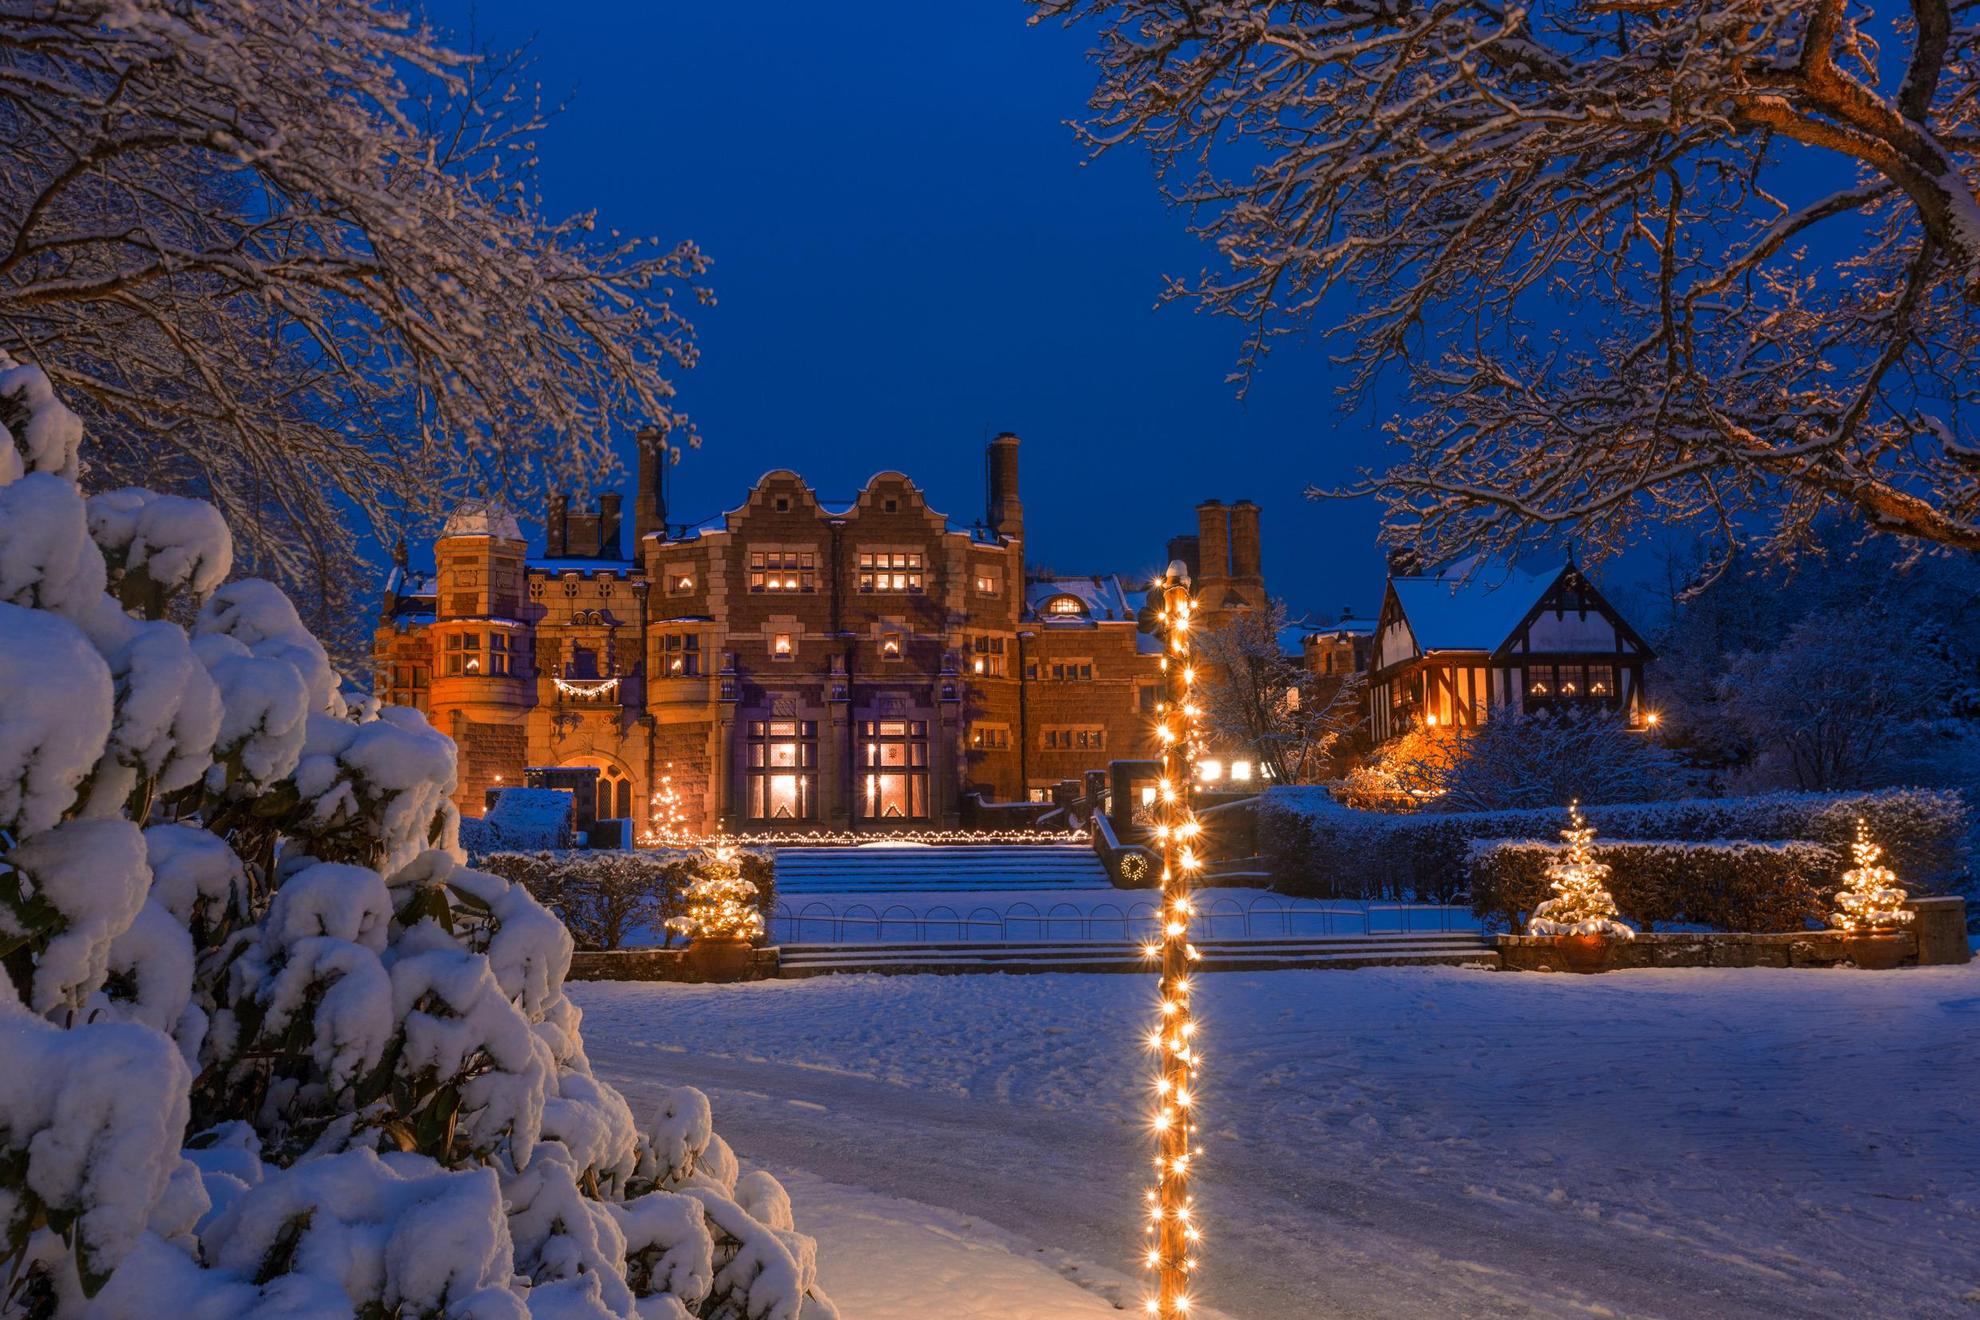 Een kasteel bedekt met sneeuw en kerstverlichting in de schemering.